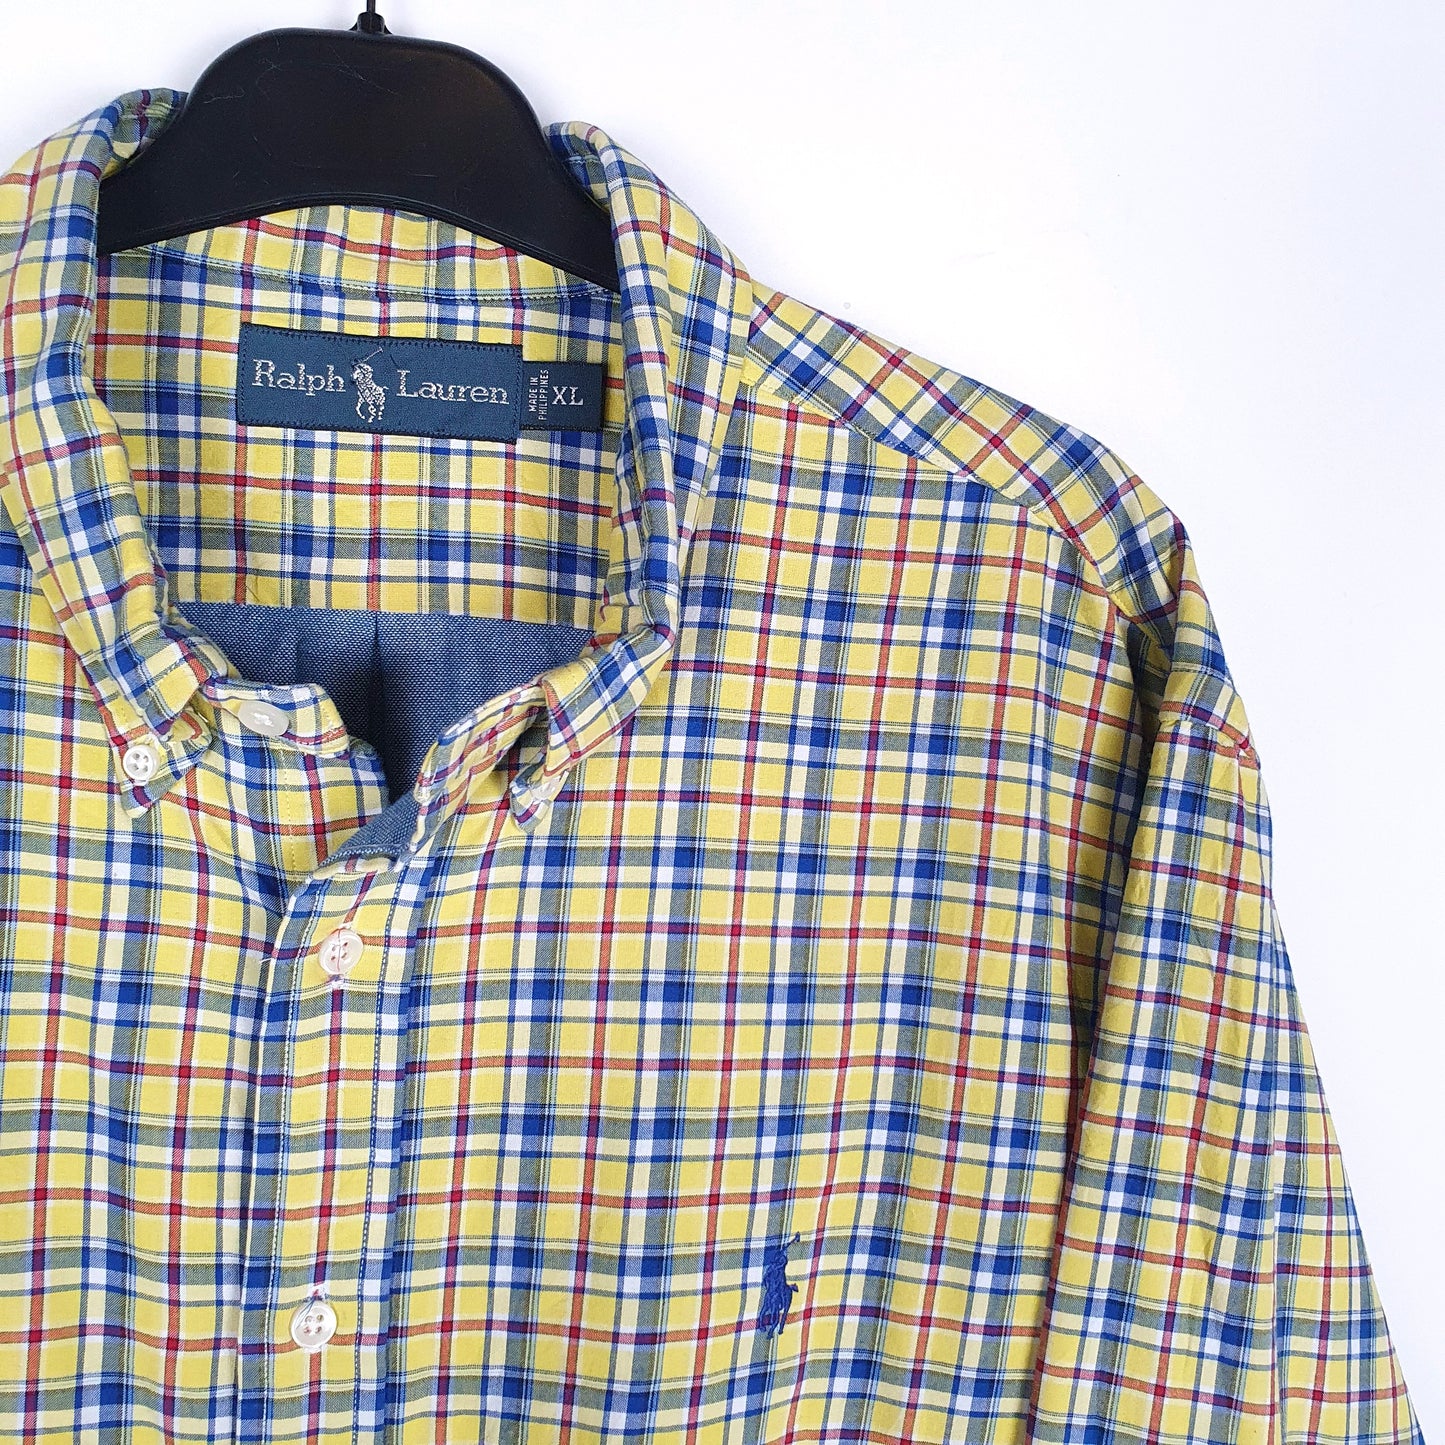 Polo Ralph Lauren Thick Shacket Long Sleeve Regular Fit Check Shirt